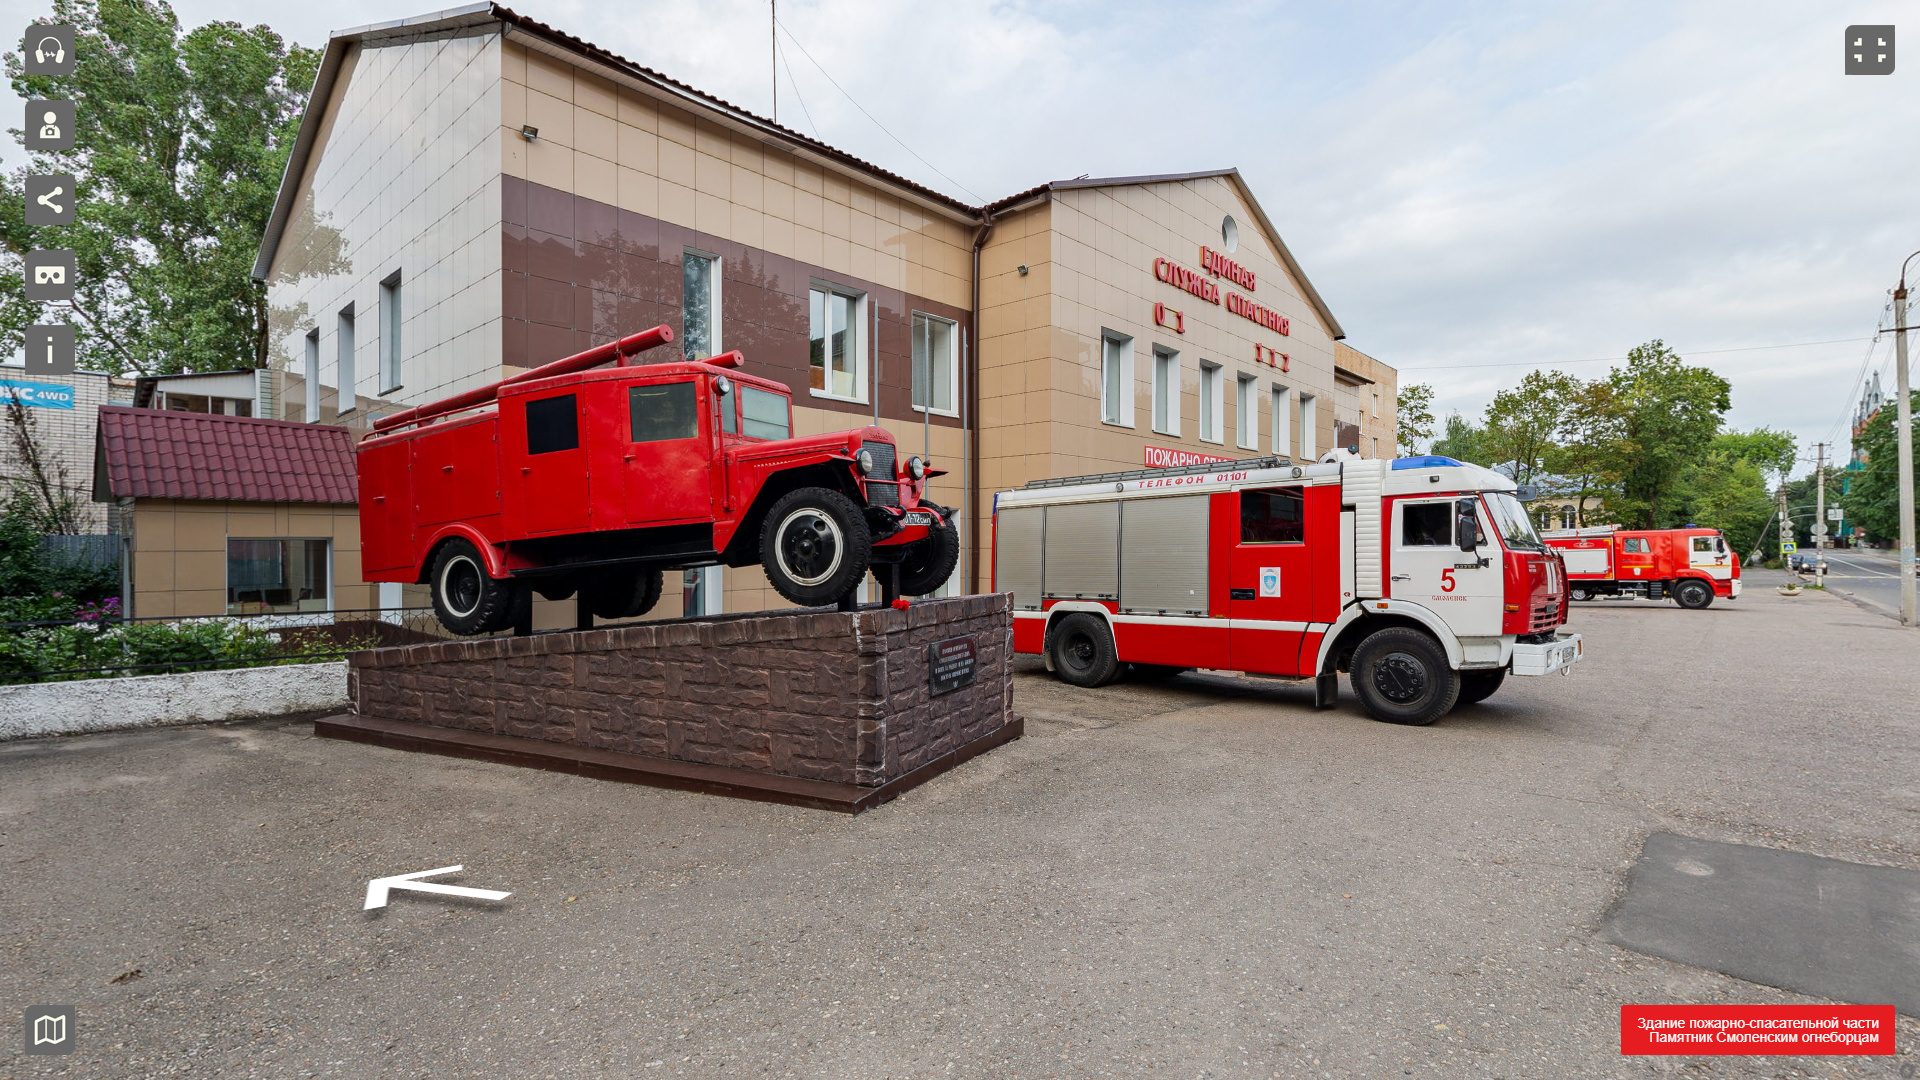 Смолян приглашают на виртуальную экскурсию в музей пожарных и спасателей